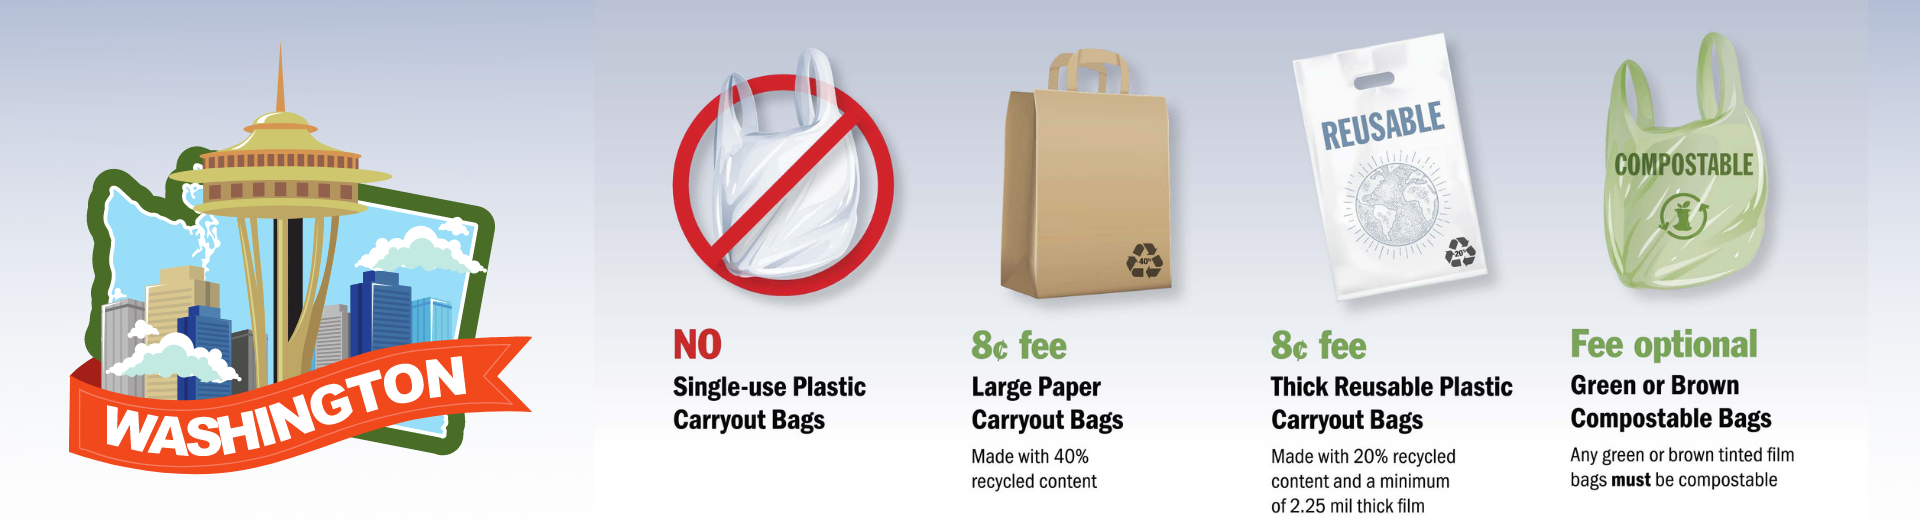 Washington Plastic Bag Ban & Plastic Bag Charge